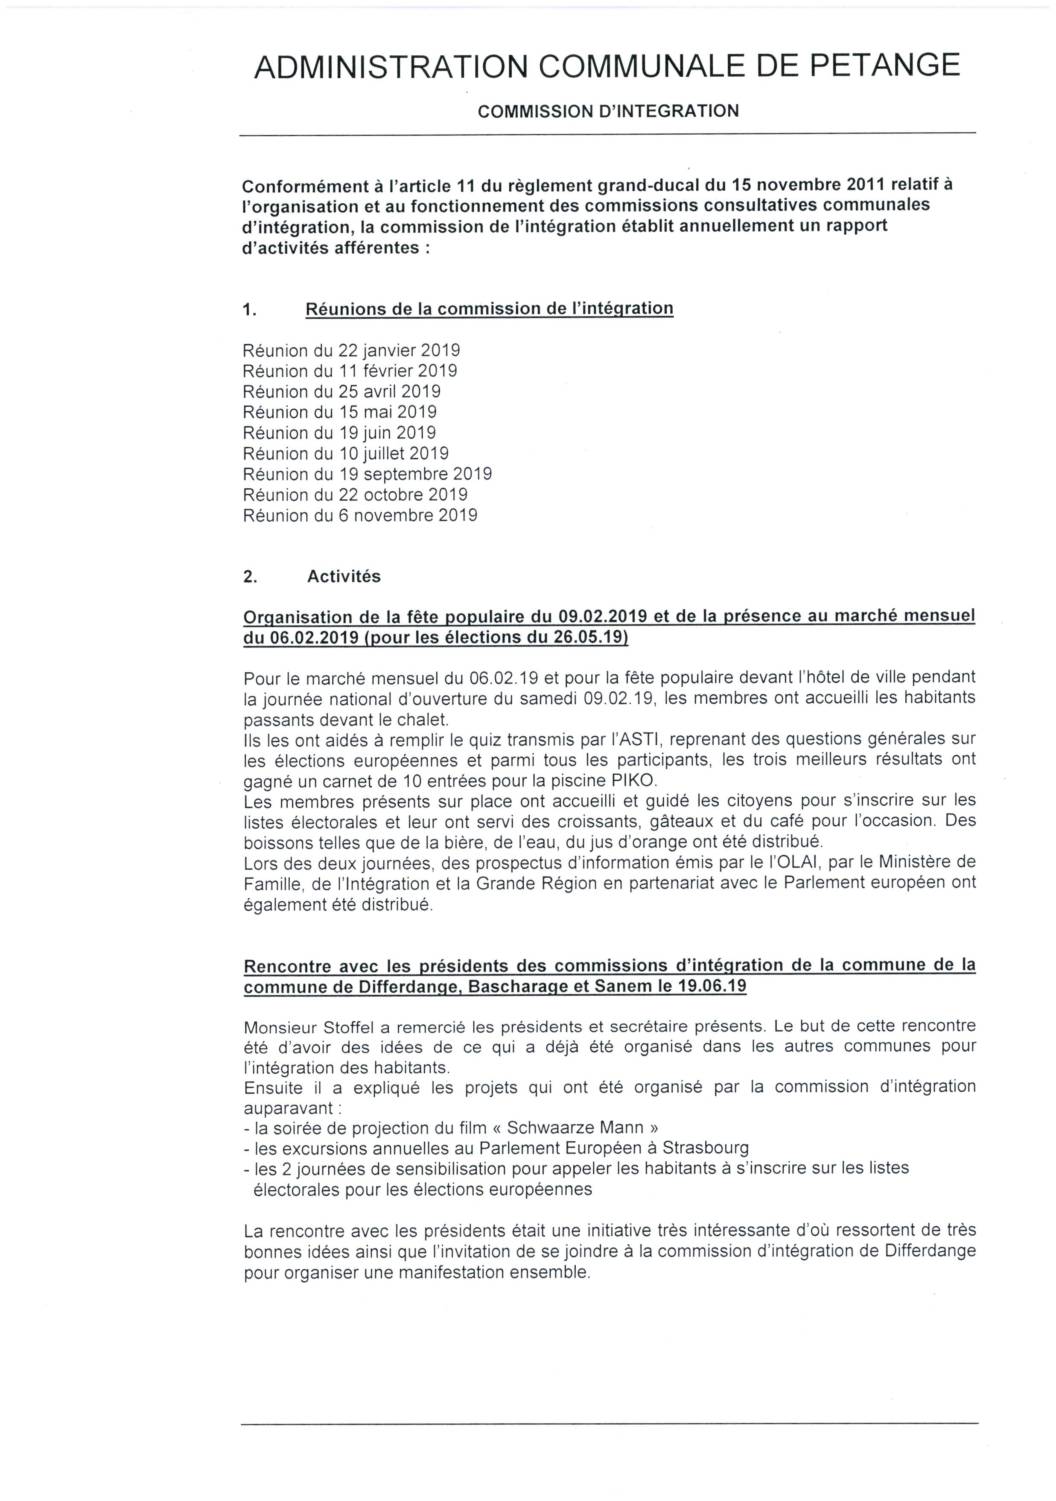 Commission d'intégration de la commune de Pétange - Rapport annuel 2019